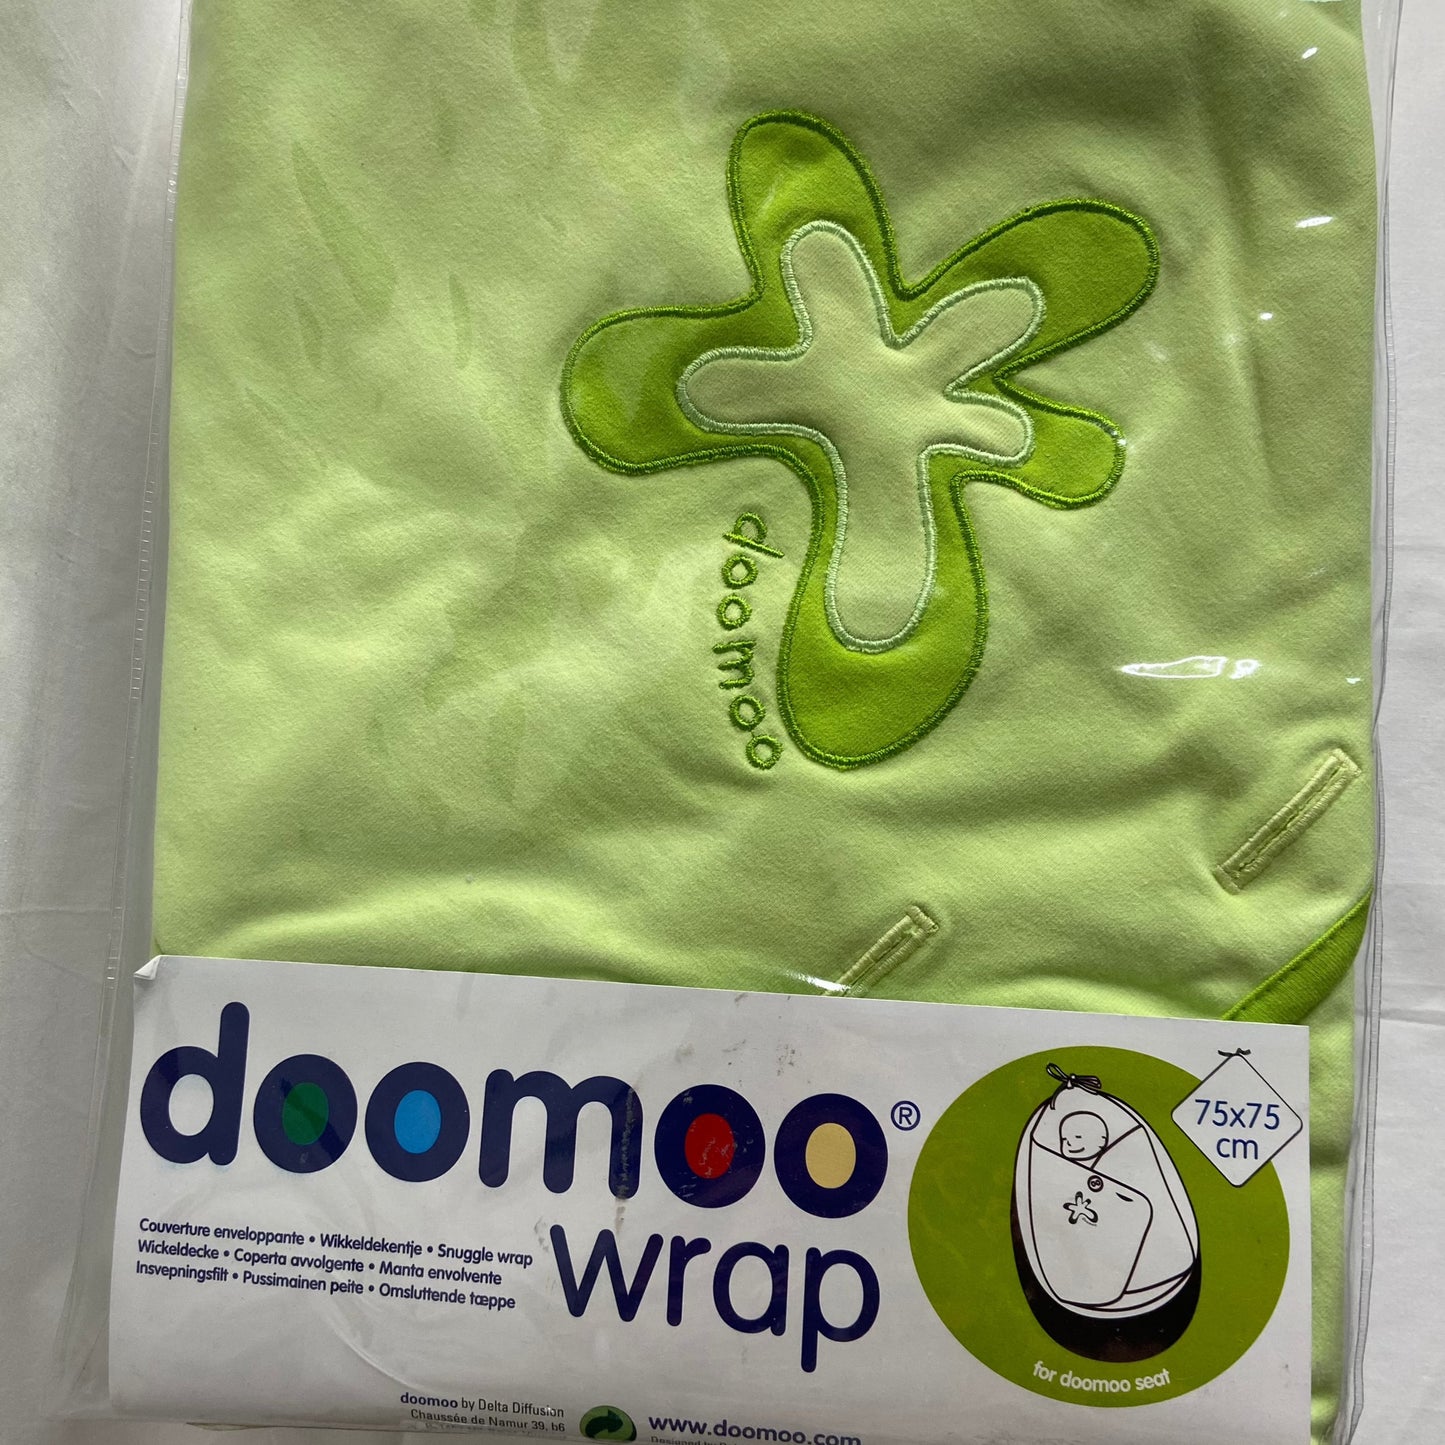 Doomoo Wrap for the Doomoo Seat